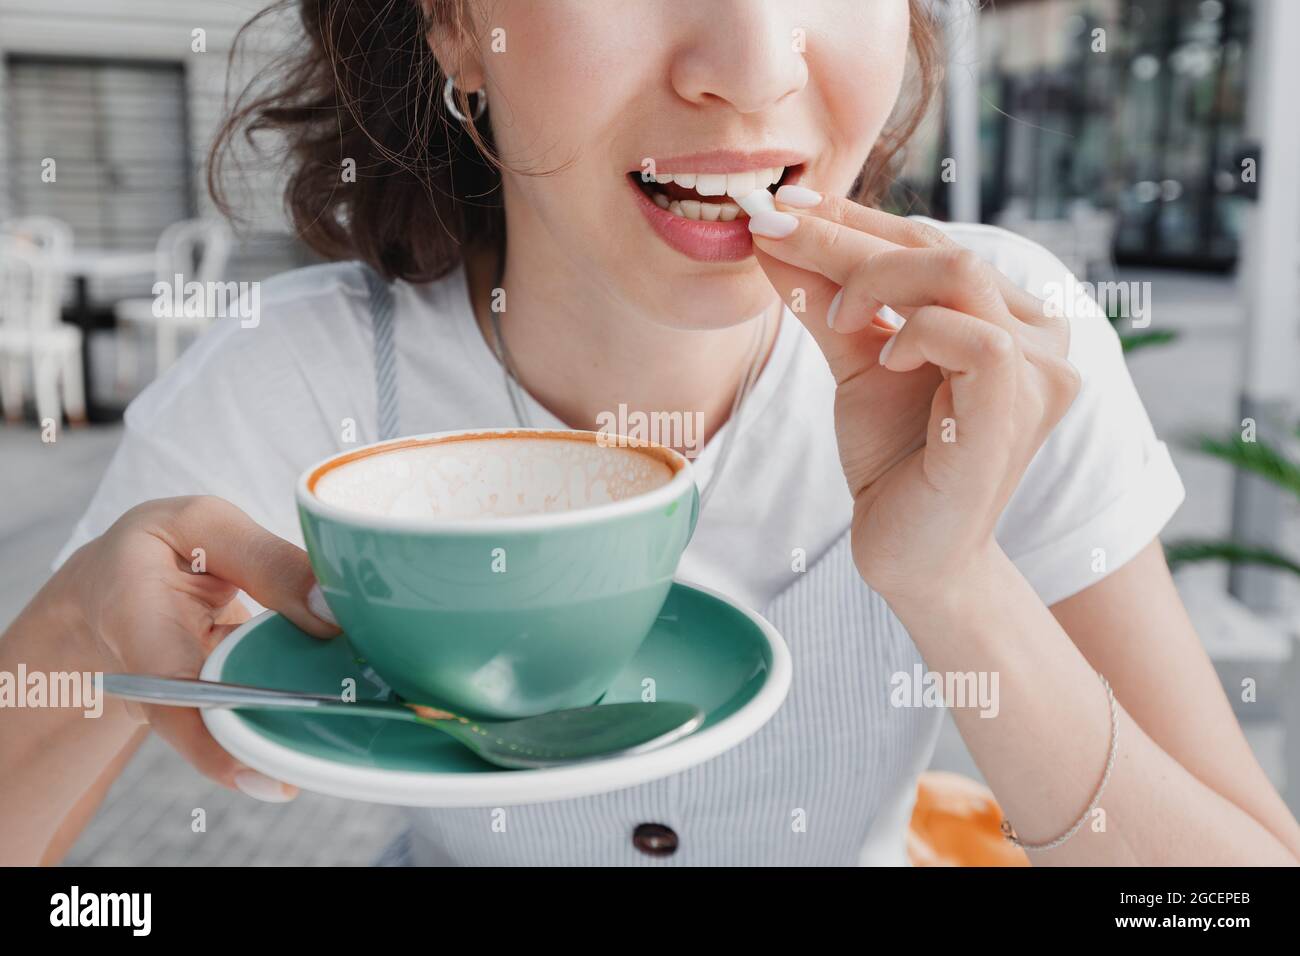 La donna ha finito il suo caffè e sta per masticare la gomma per pulire i denti dalla placca e rinfrescare il respiro. Concetto di salute dentale Foto Stock